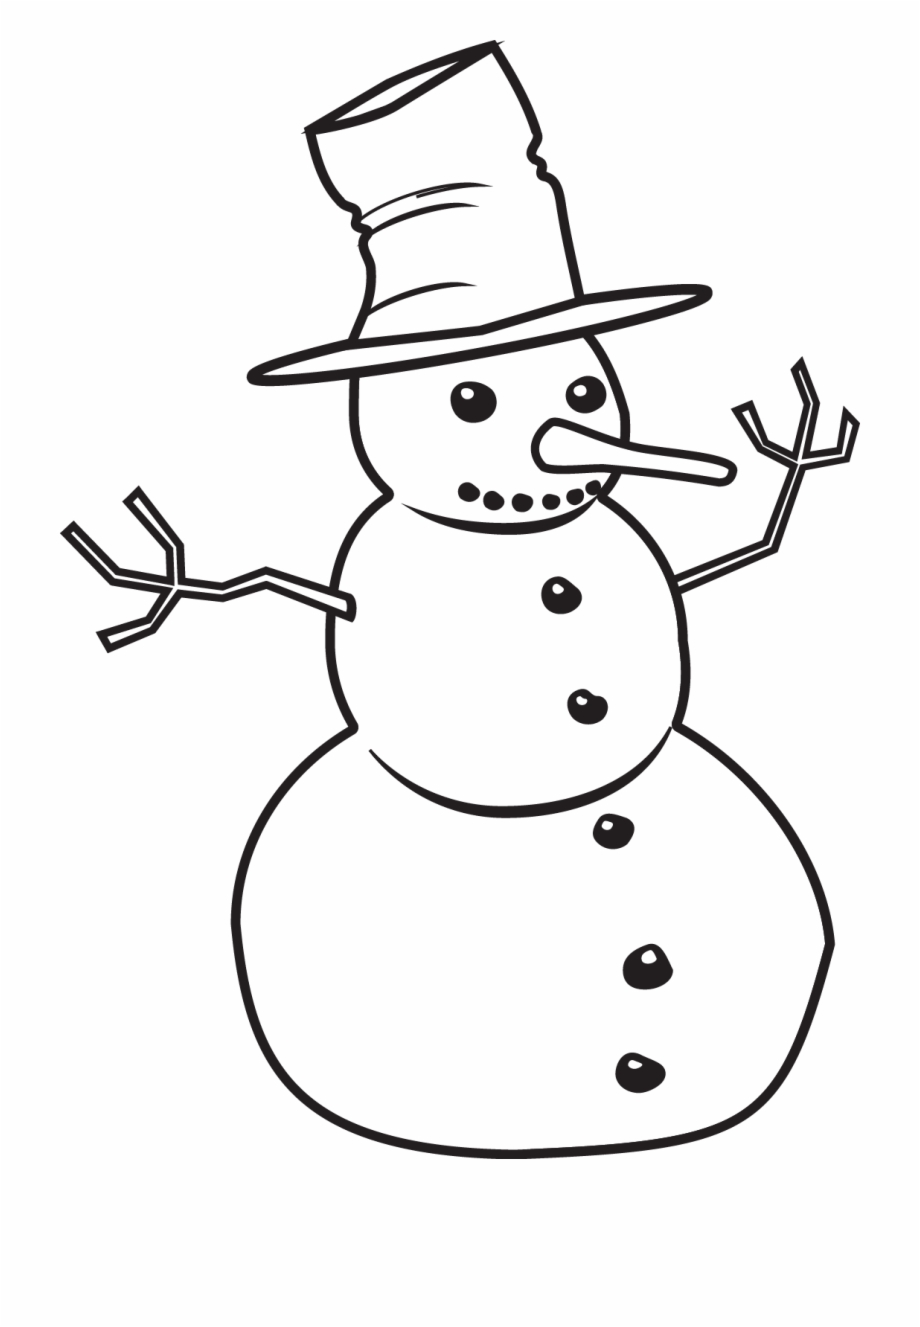 Snowman clipart line art, Snowman line art Transparent FREE for ...